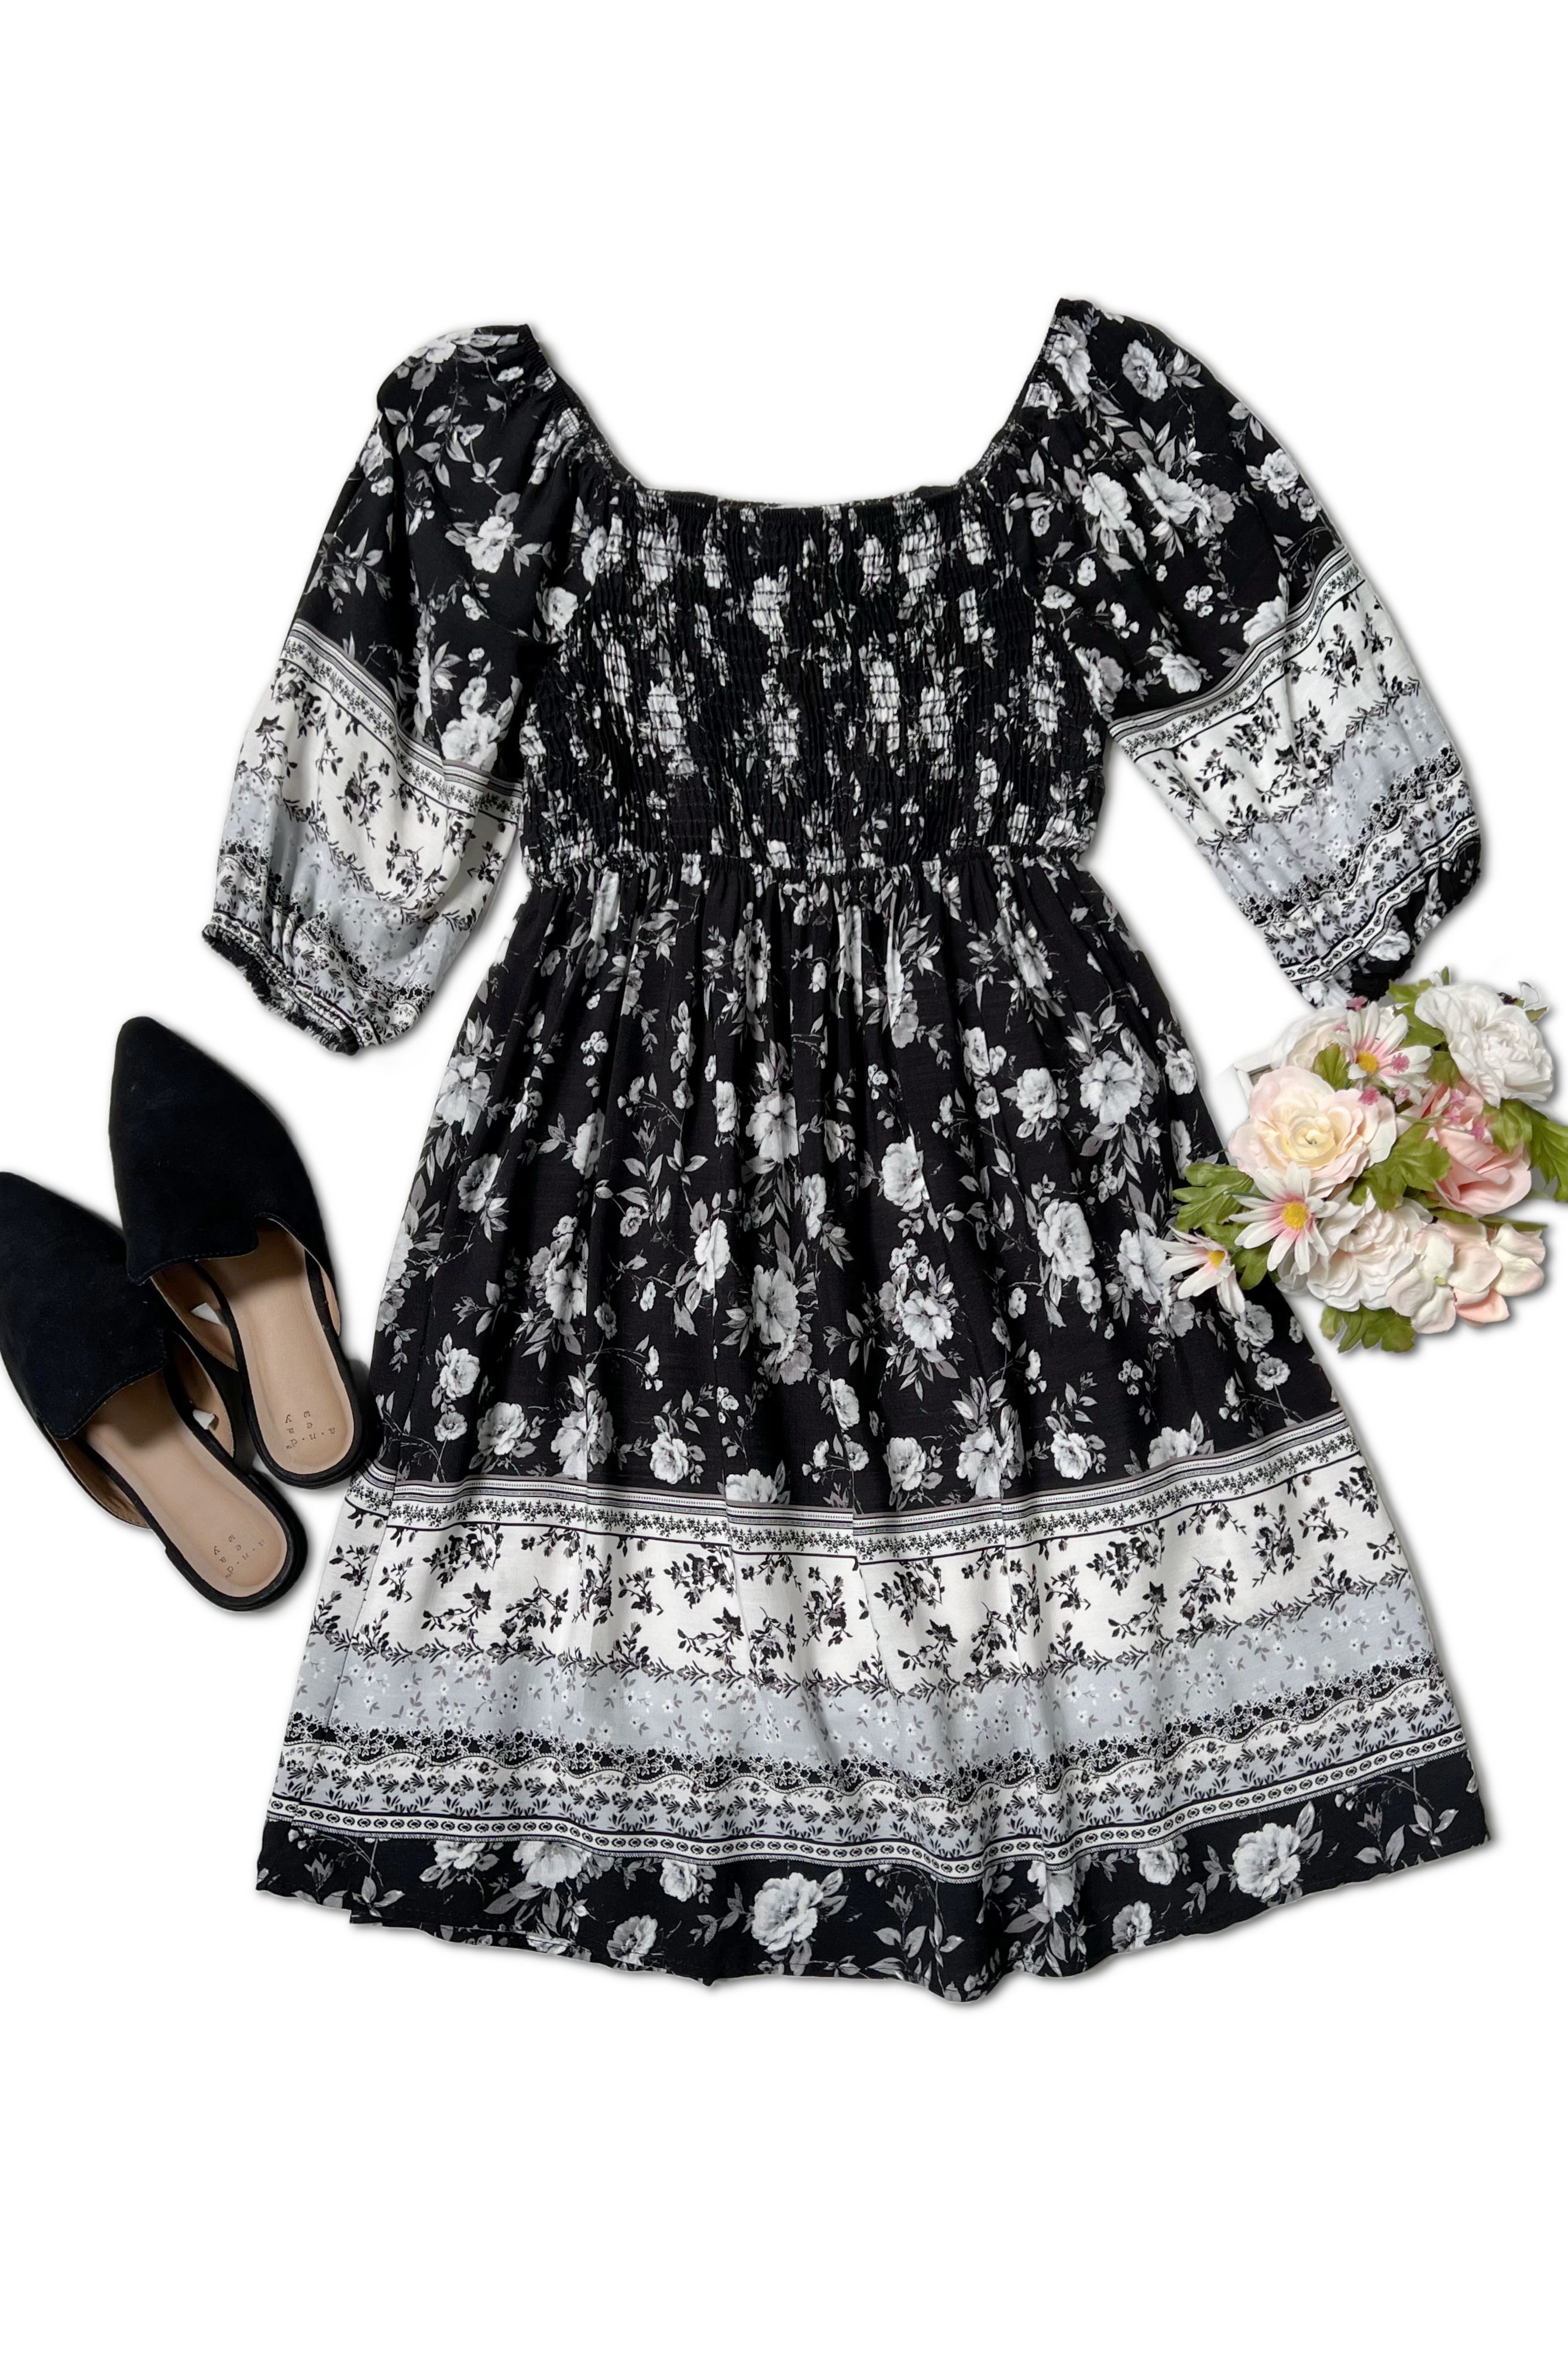 Floral Cascade - Dress Boutique Simplified